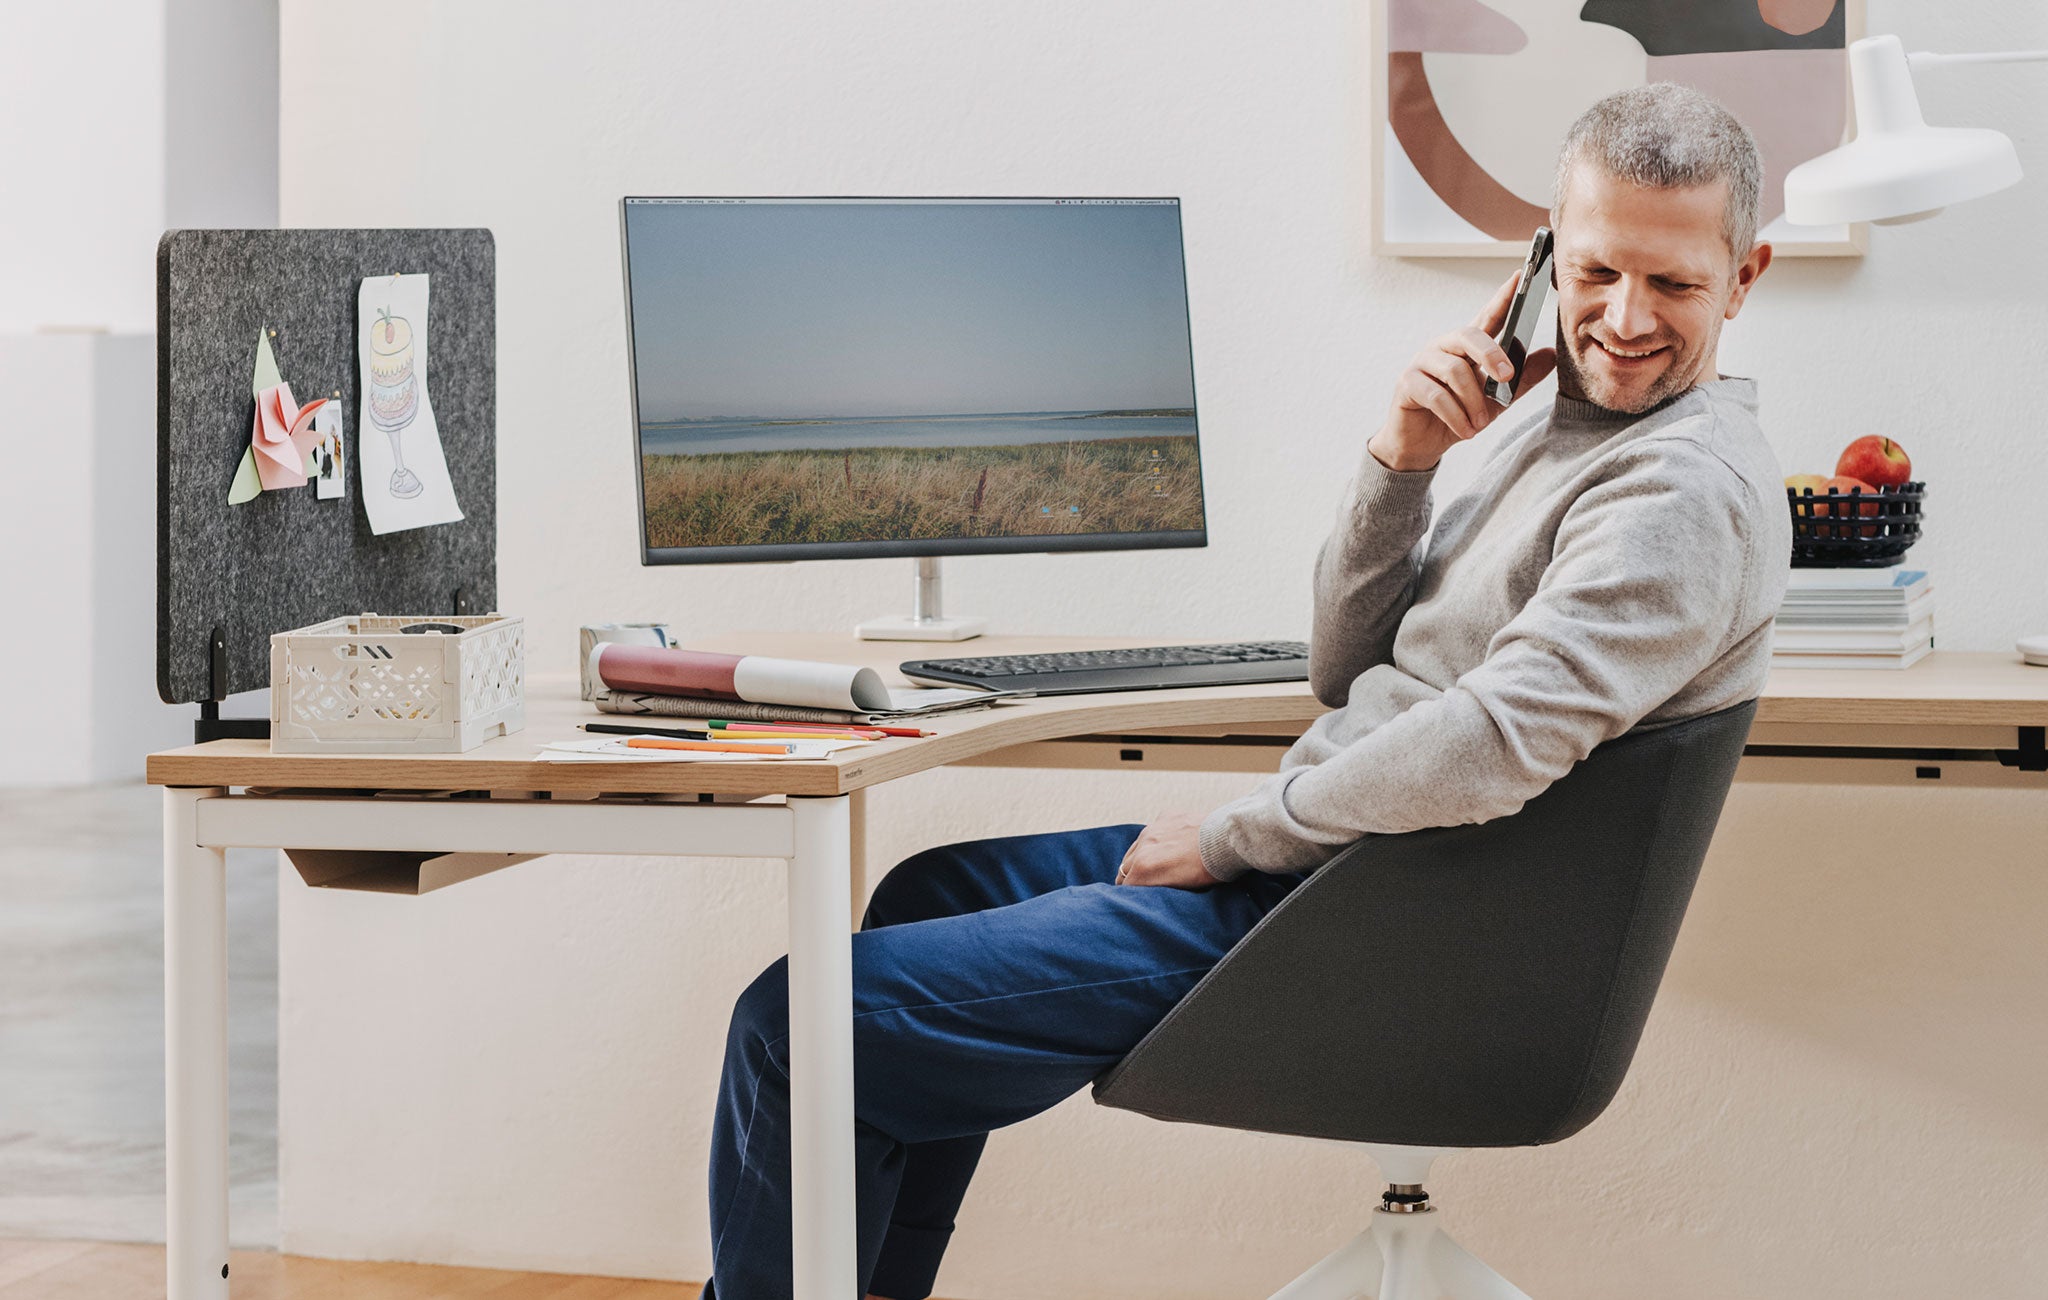 Man sieht einen Raum mit einem Arbeitsbereich, in dem ein Eckarbeitstisch mit Holztischplatte steht. Auf diesem befindet sich ein Monitorscreen mit einer Halterung. Davor sitzt ein älterer Mann, der in der rechten Hand ein Handy zum Ohr hält und nach hinten blickt.